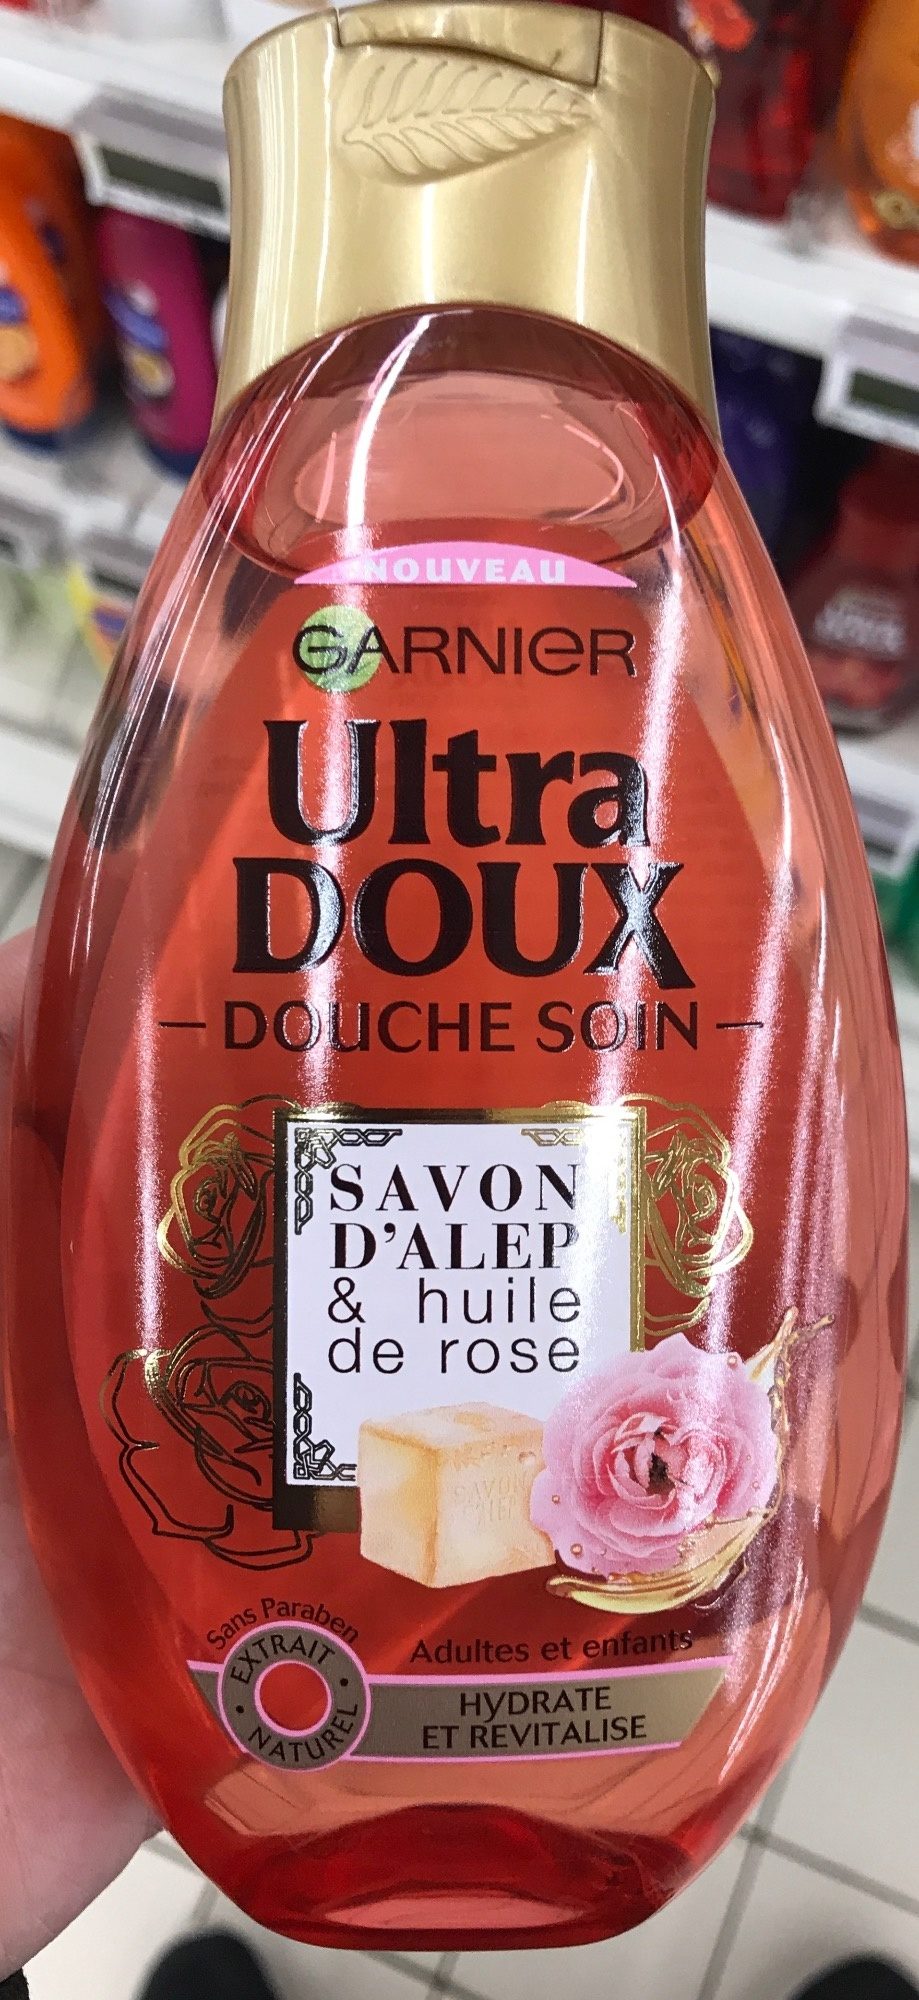 Ultra Doux Douche soin Savon d'Alep & Huile de Rose - Product - fr